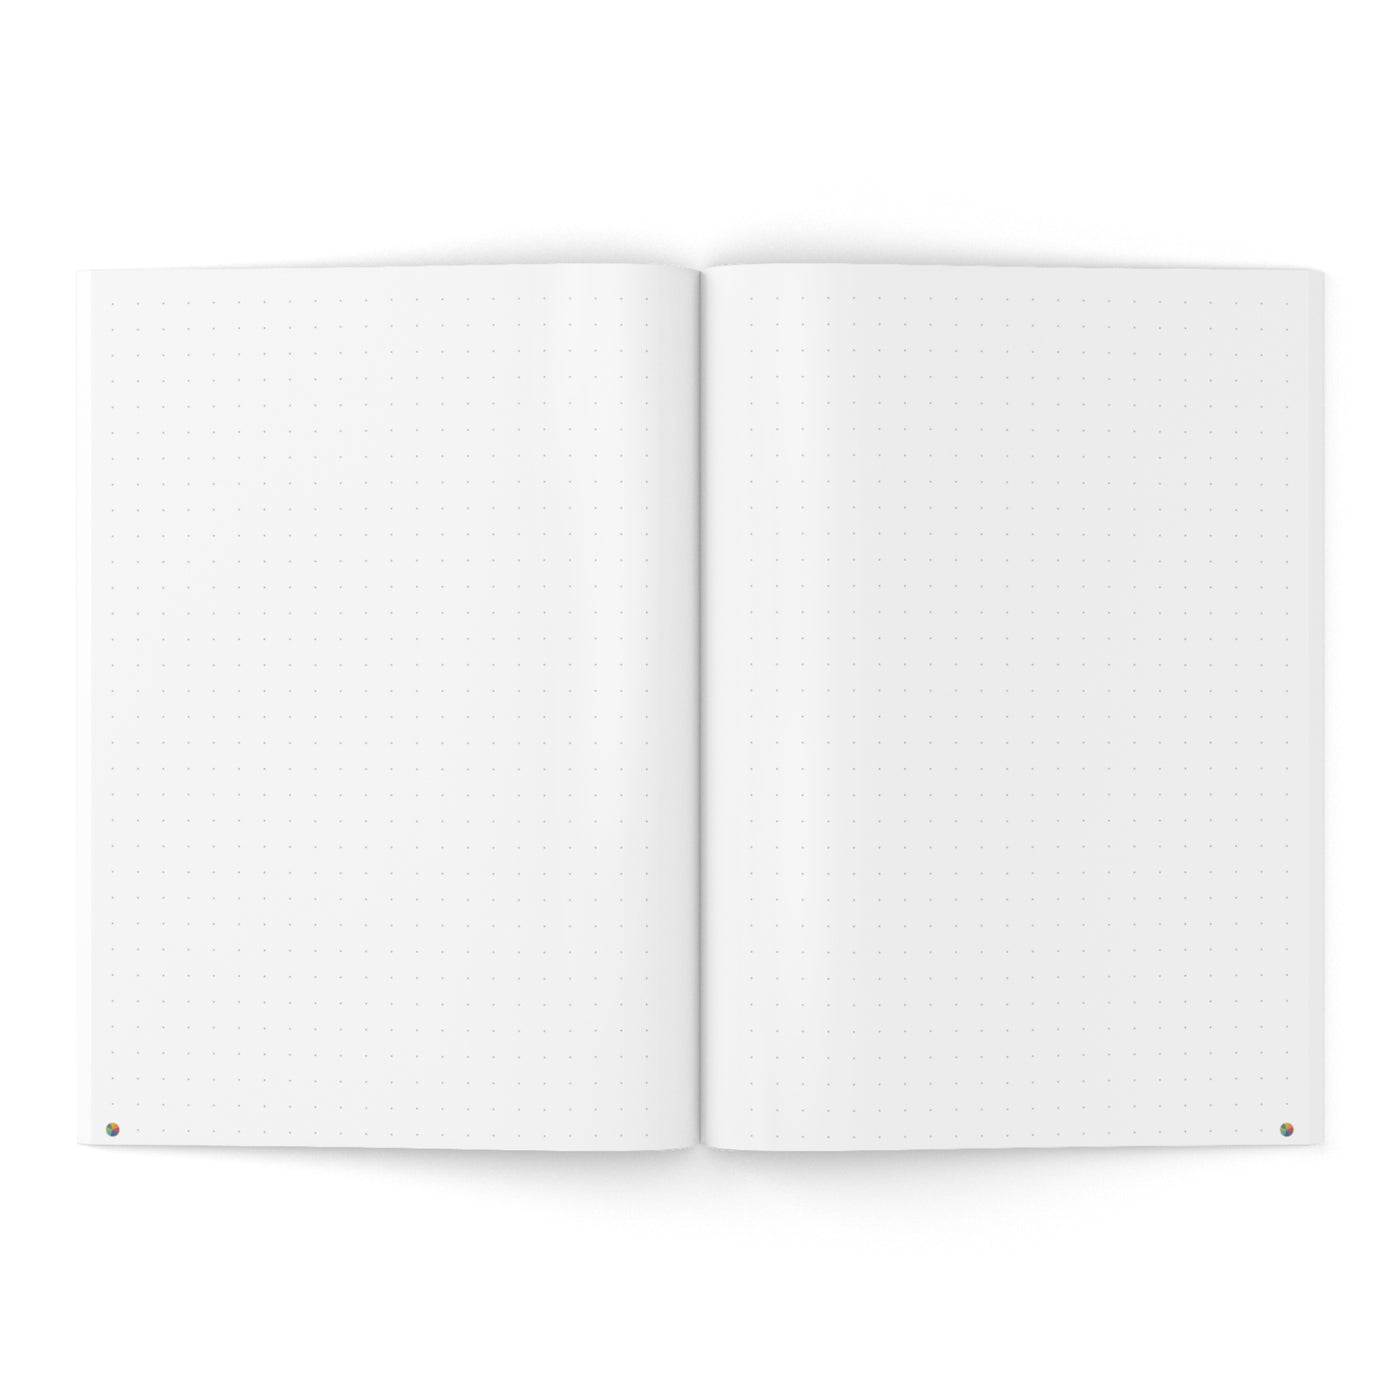 Dot-Grid Notebook - Makse Teal